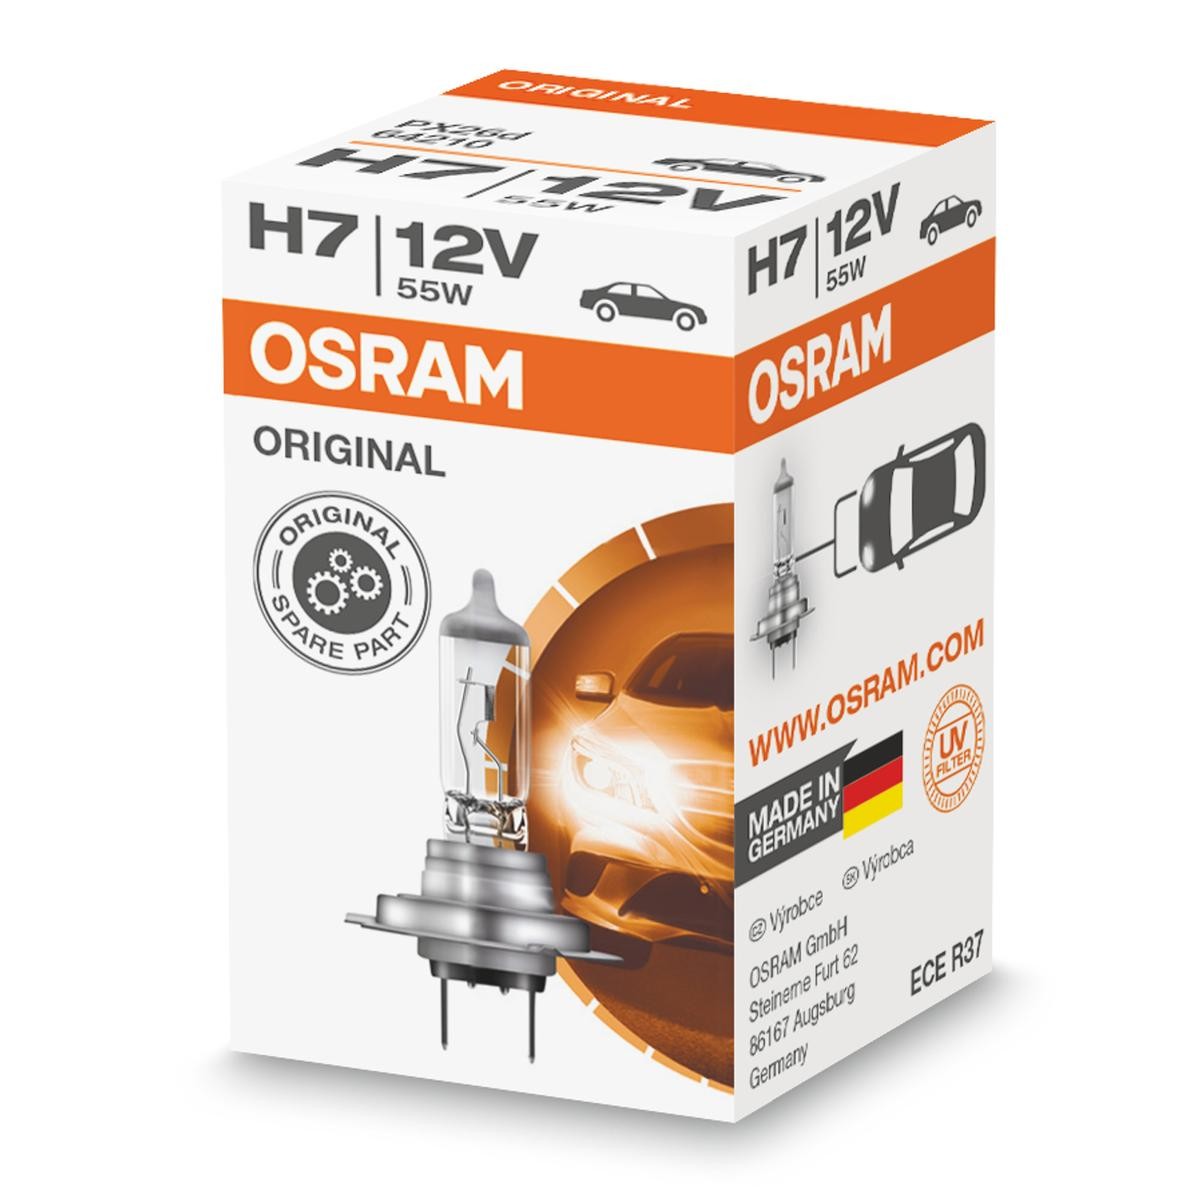 H7 OSRAM LONGLIFE H7 12V 55W3200K Halogen Glödlampa, fjärrstrålkastare 64210L köp lågt pris